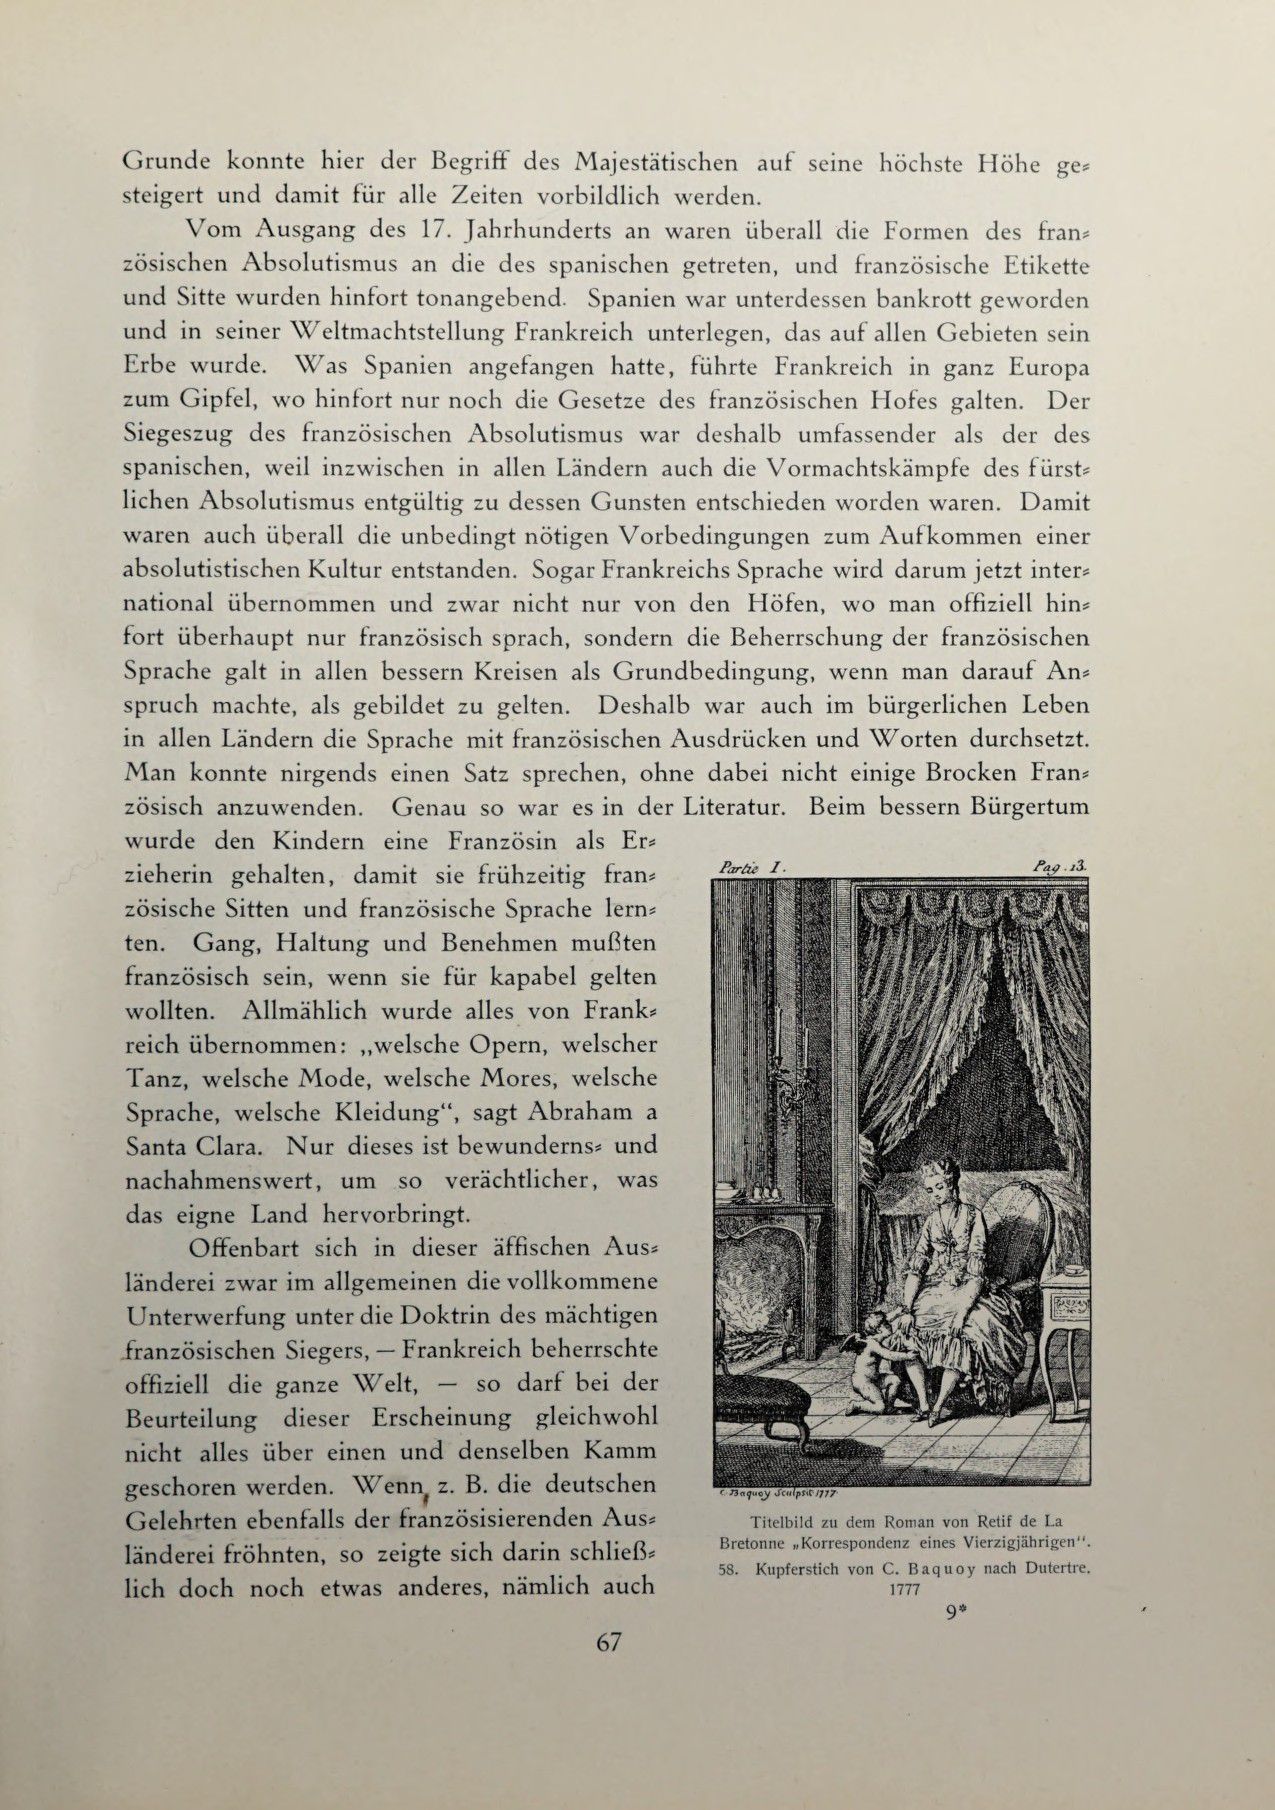 [Eduard Fuchs] Illustrierte Sittengeschichte vom Mittelalter bis zur Gegenwart: Bd. 2. and Ergänzungsband. Die galante Zeit [German] 114